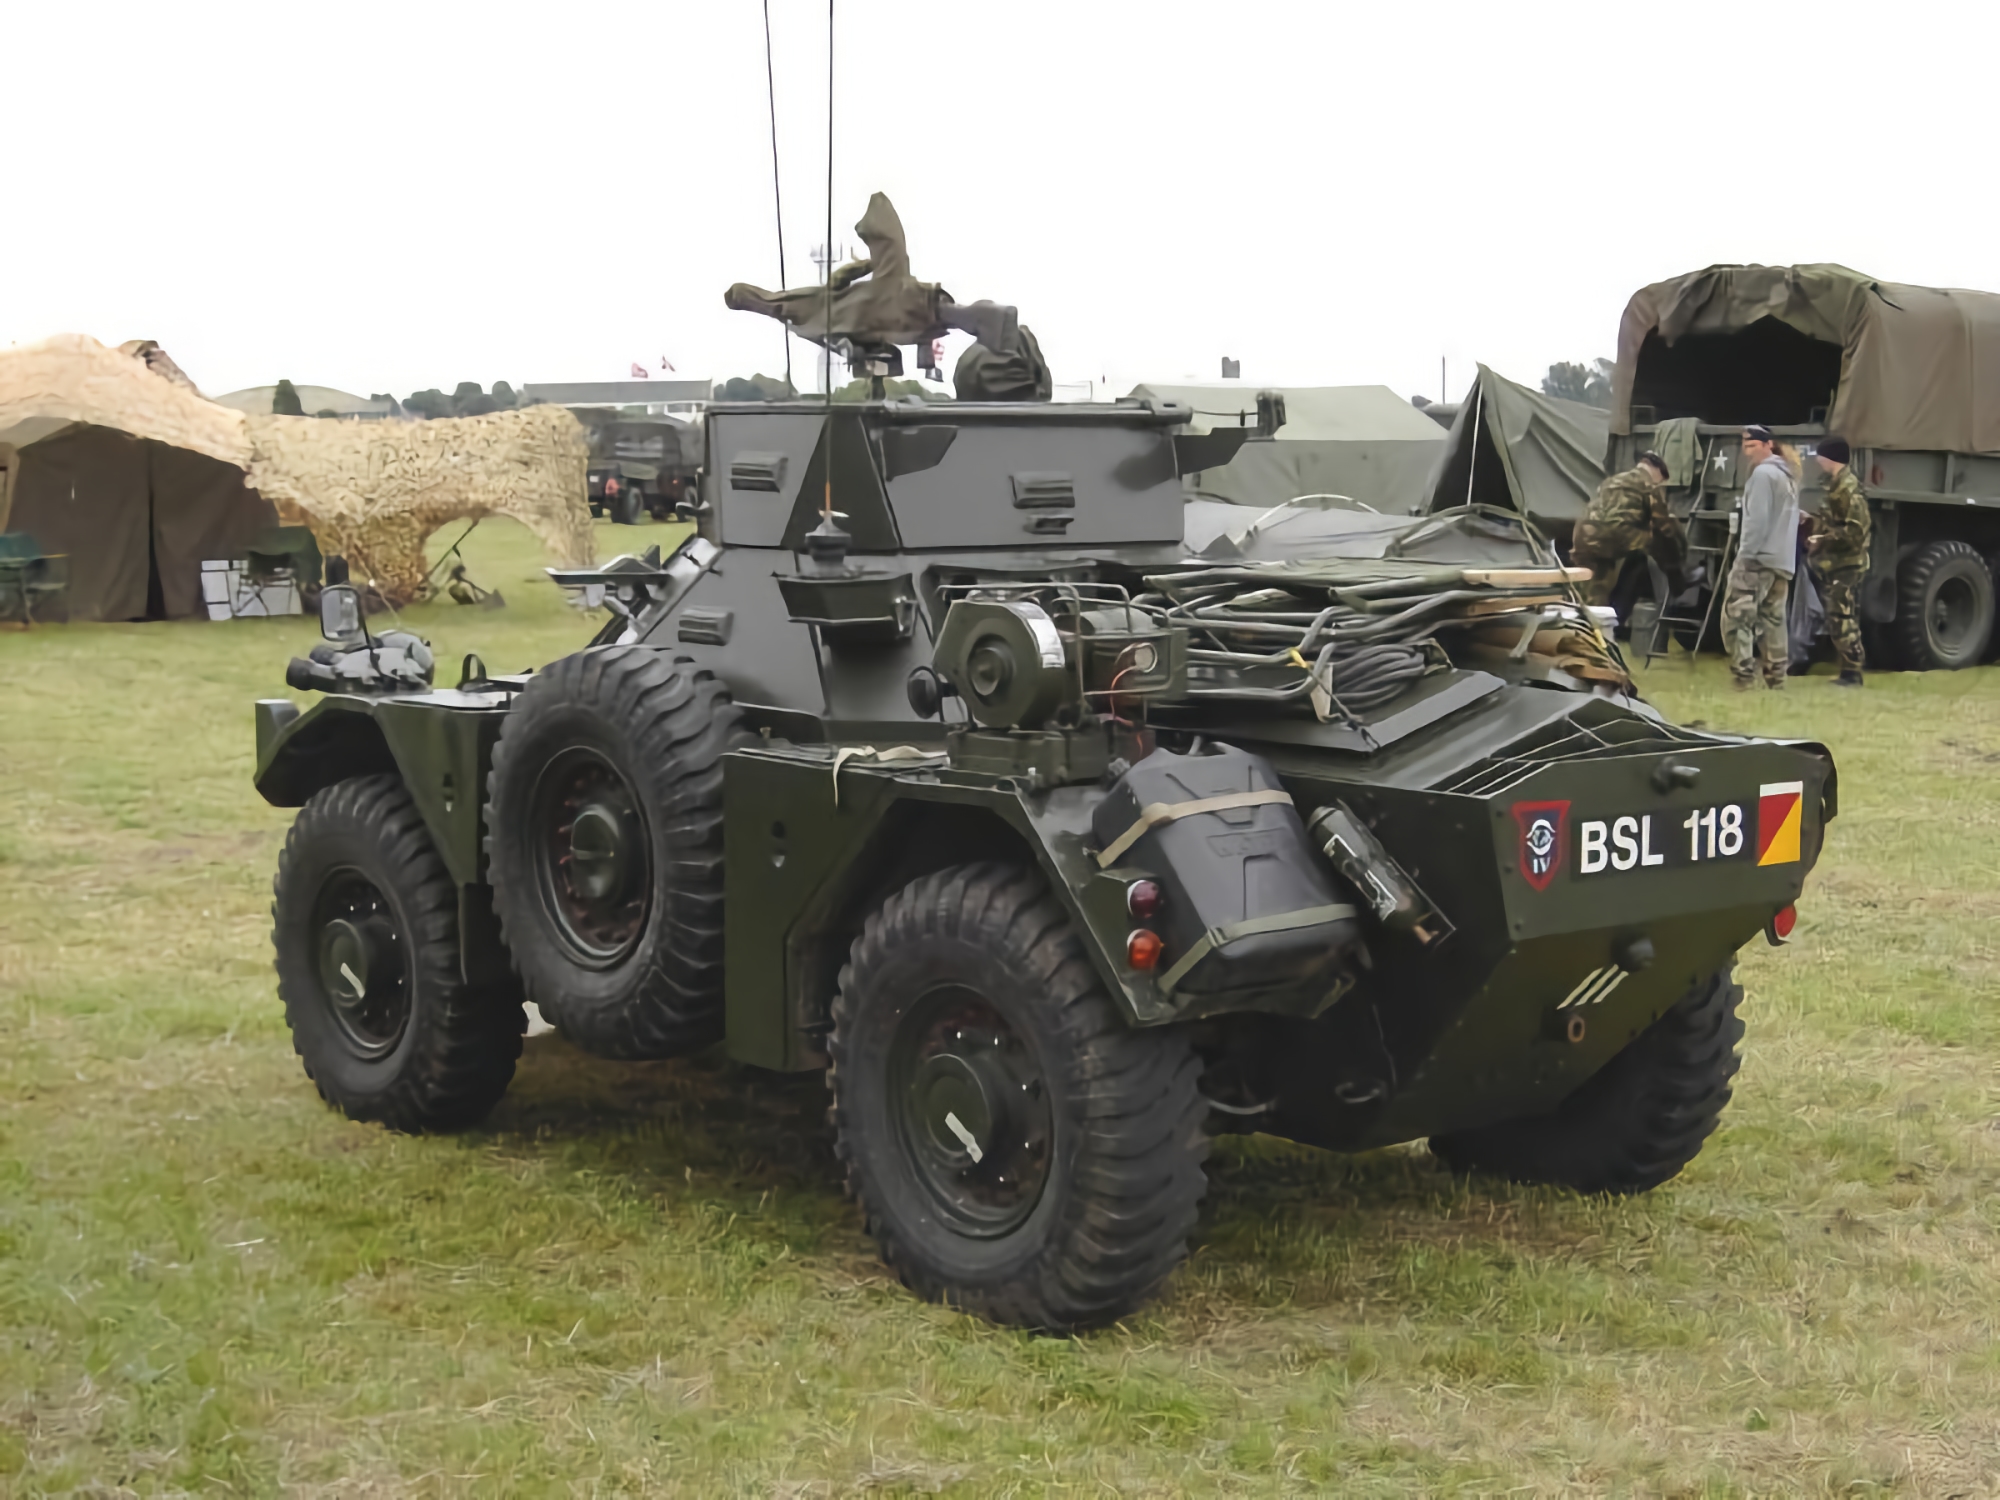 Le forze armate dell'Ucraina utilizzano veicoli corazzati britannici Land Rover Snatch e veicoli da ricognizione Ferret Mk 1 nella parte anteriore.